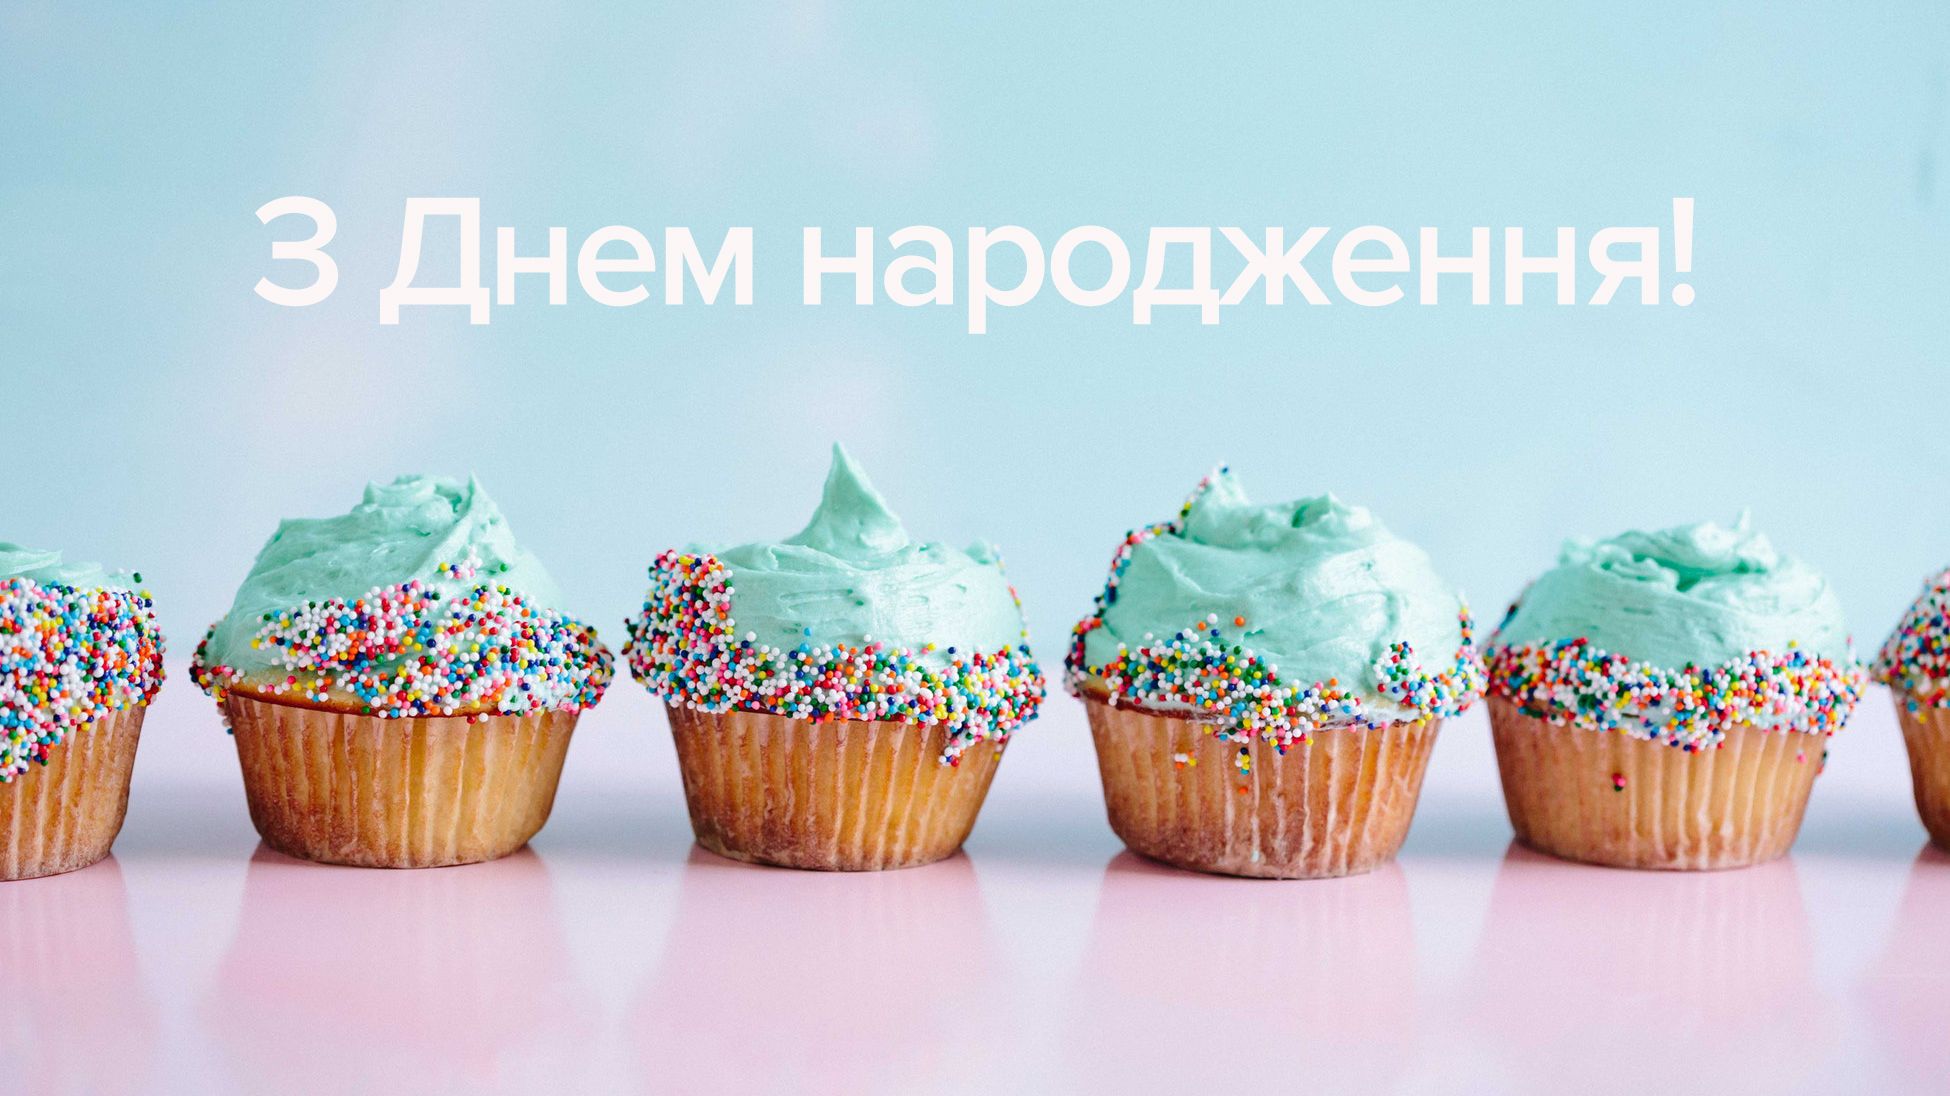 Привітання з днем народження мужчині українською мовою
